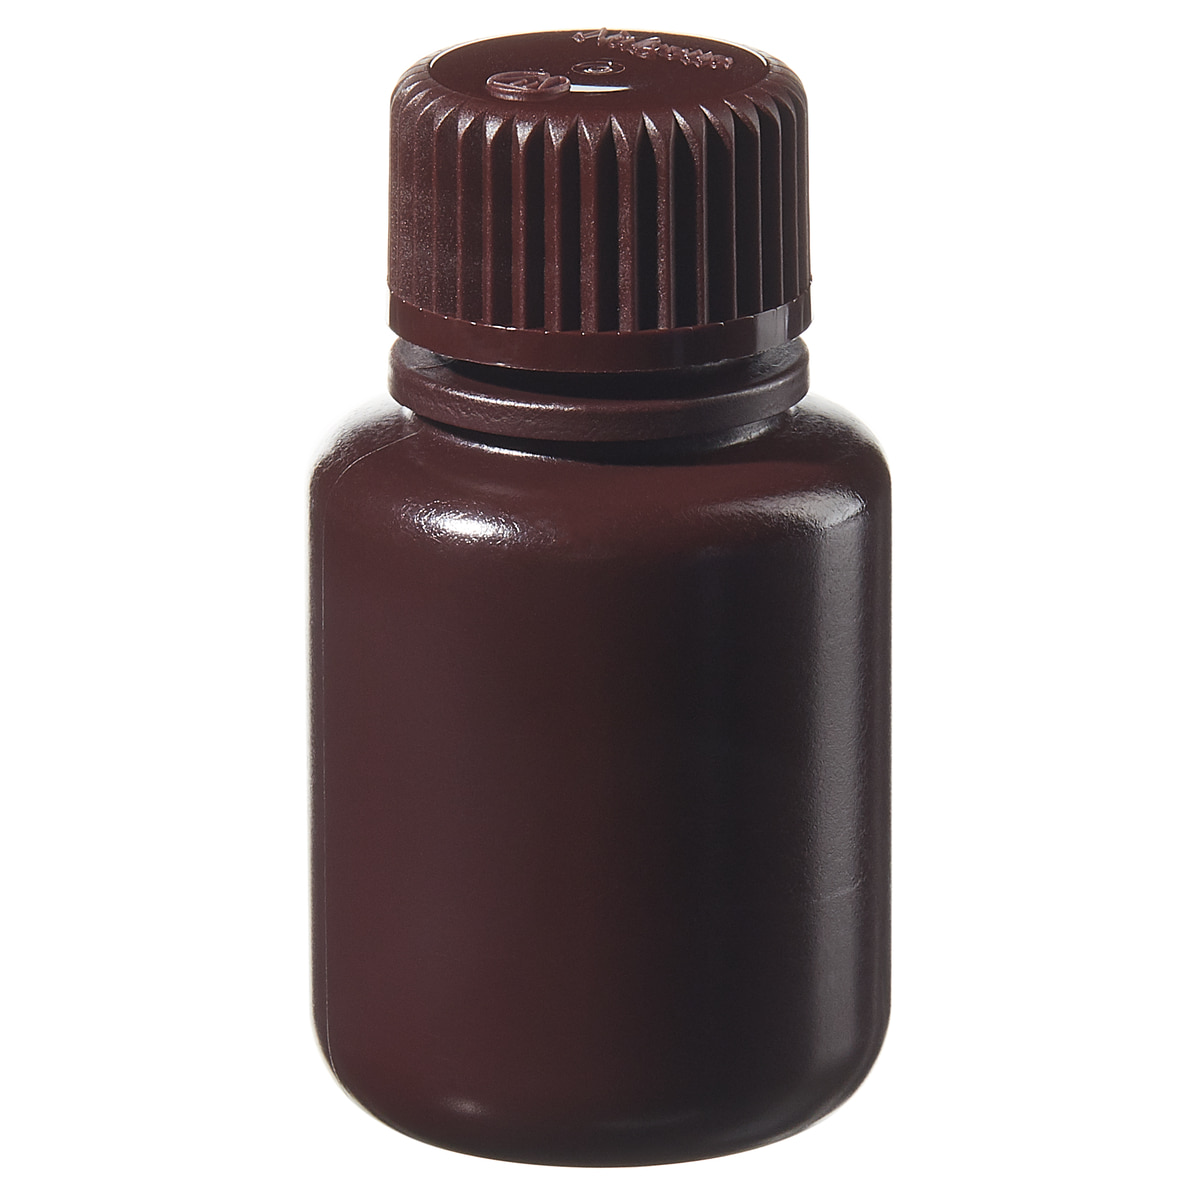 [Thermo Nalgene] 2004-0001 / 30mL Nalgene Narrow-Mouth Amber HDPE Lab Quality Bottle